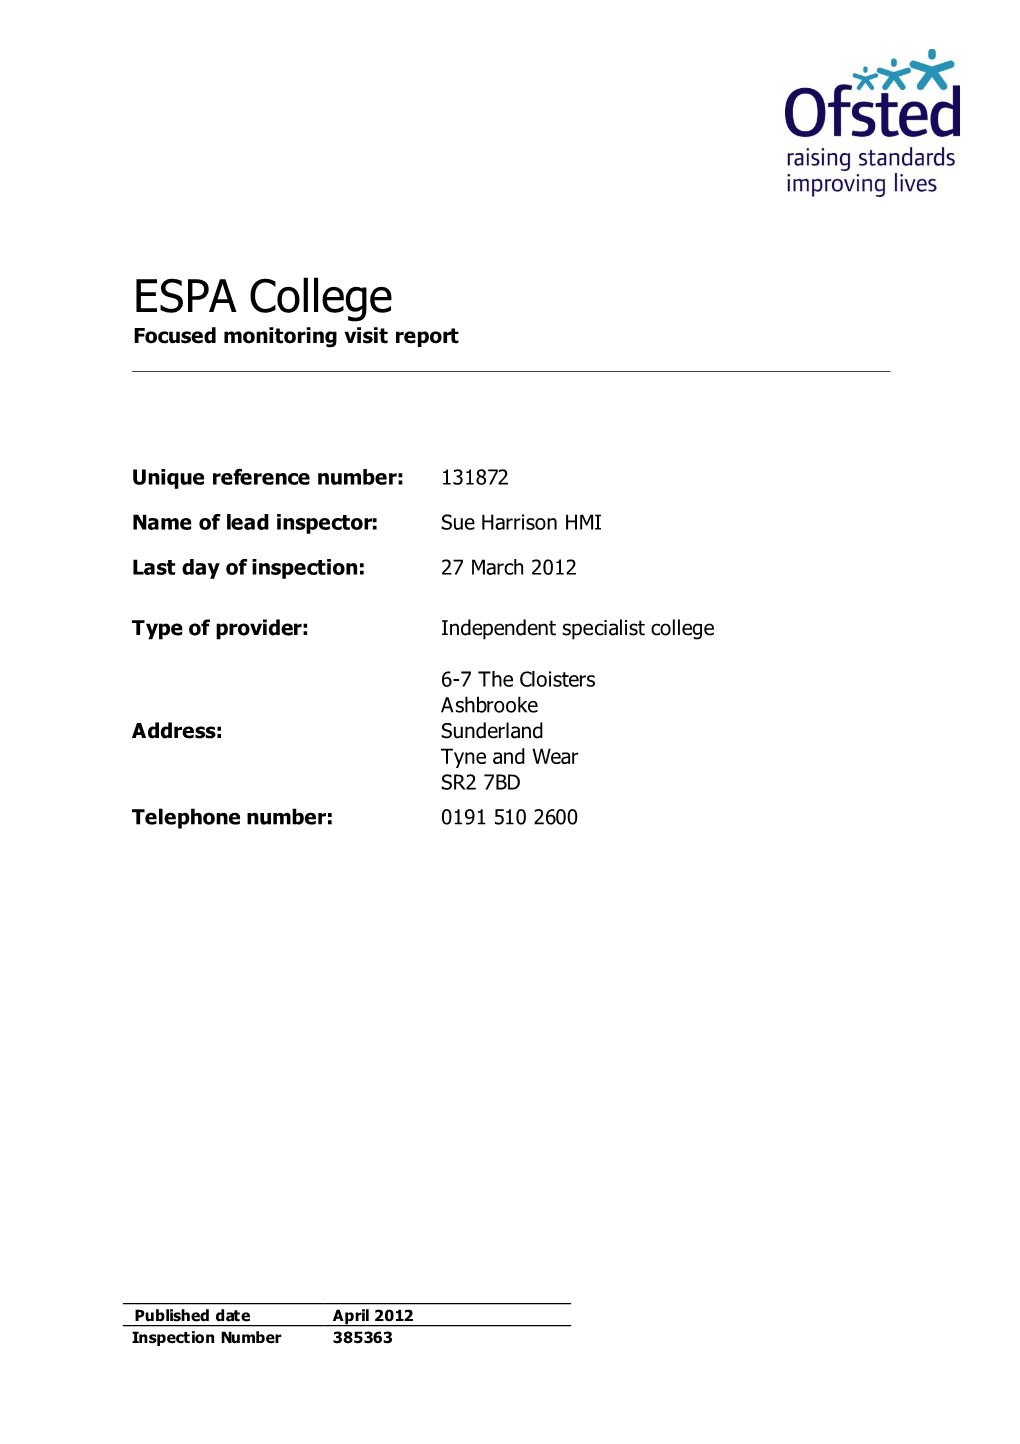 ESPA College Focused Monitoring Visit Report